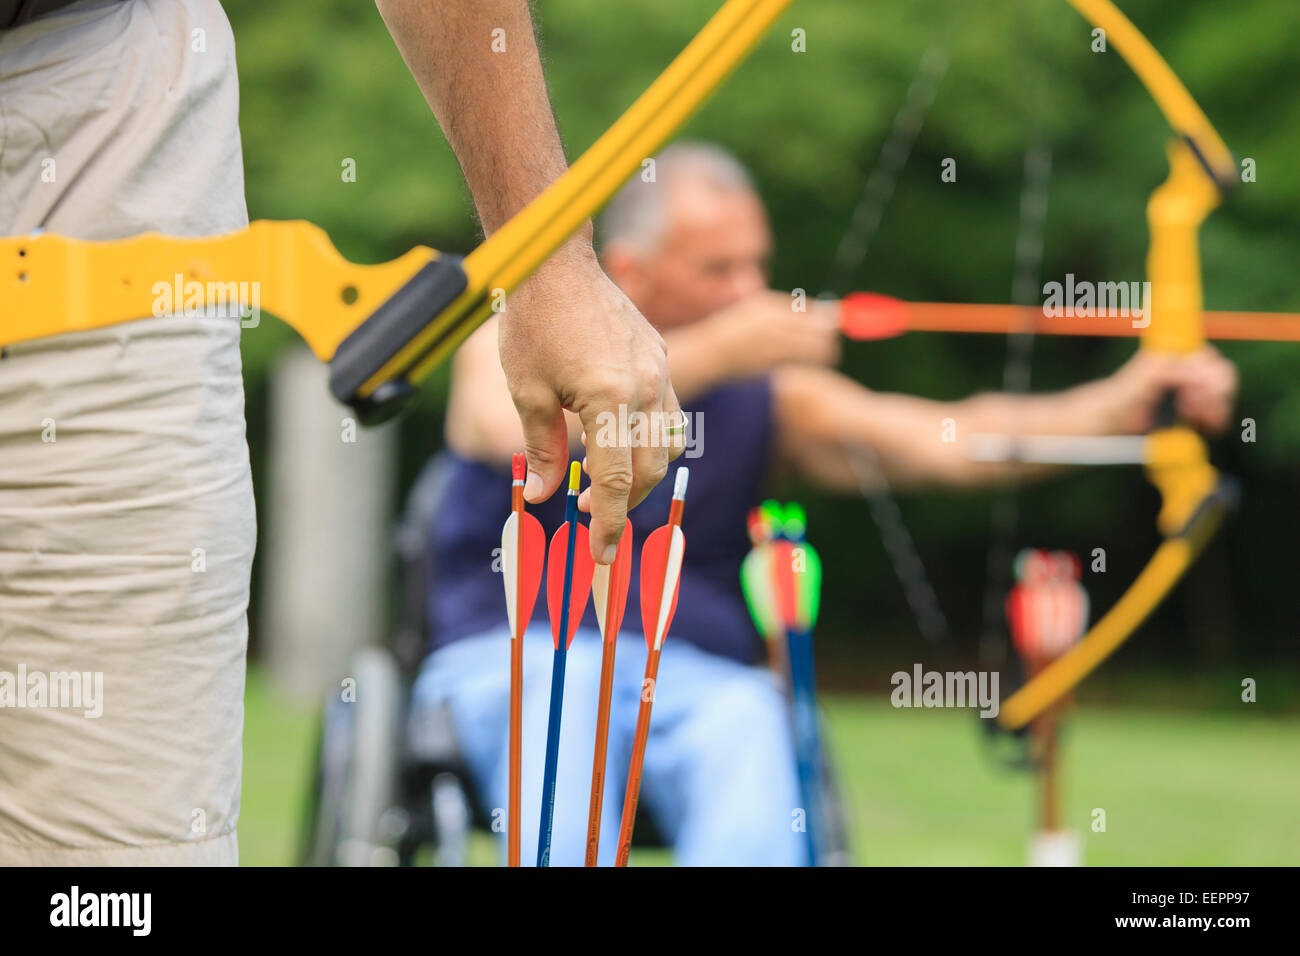 Le persone con disabilità durante la pratica di tiro con l'arco Foto Stock